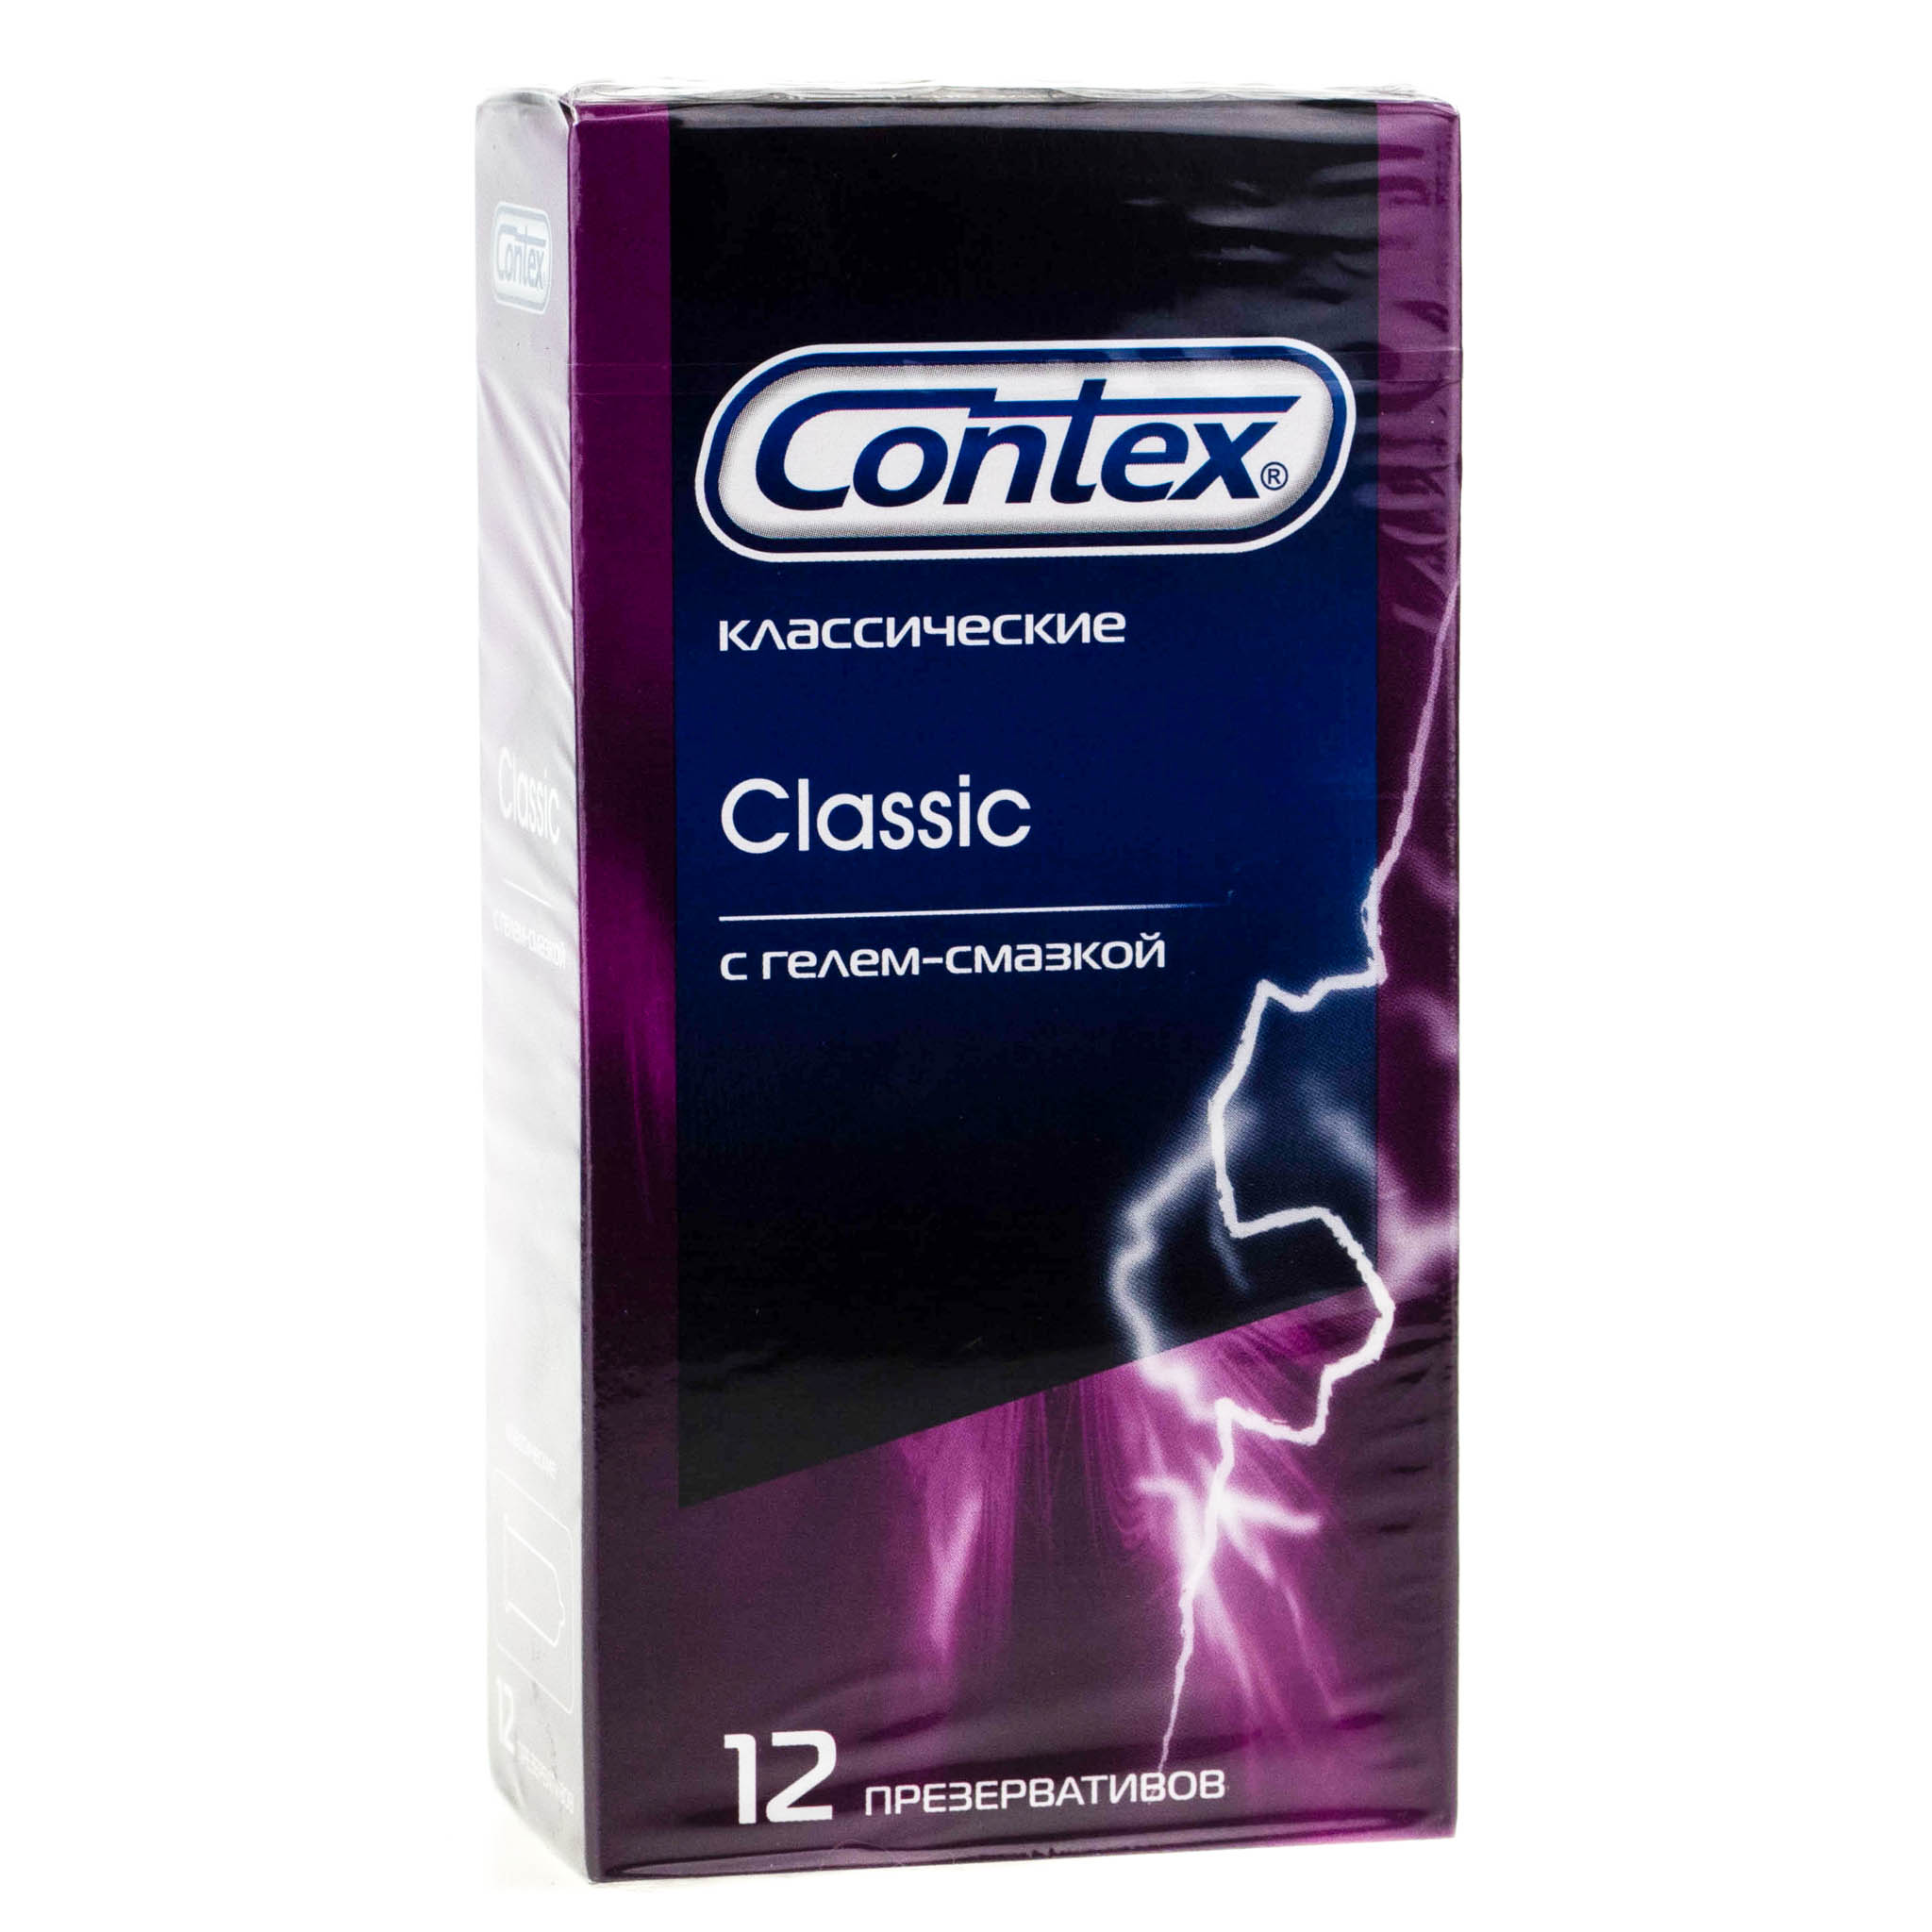 Презервативы Contex Classic - 3 шт.